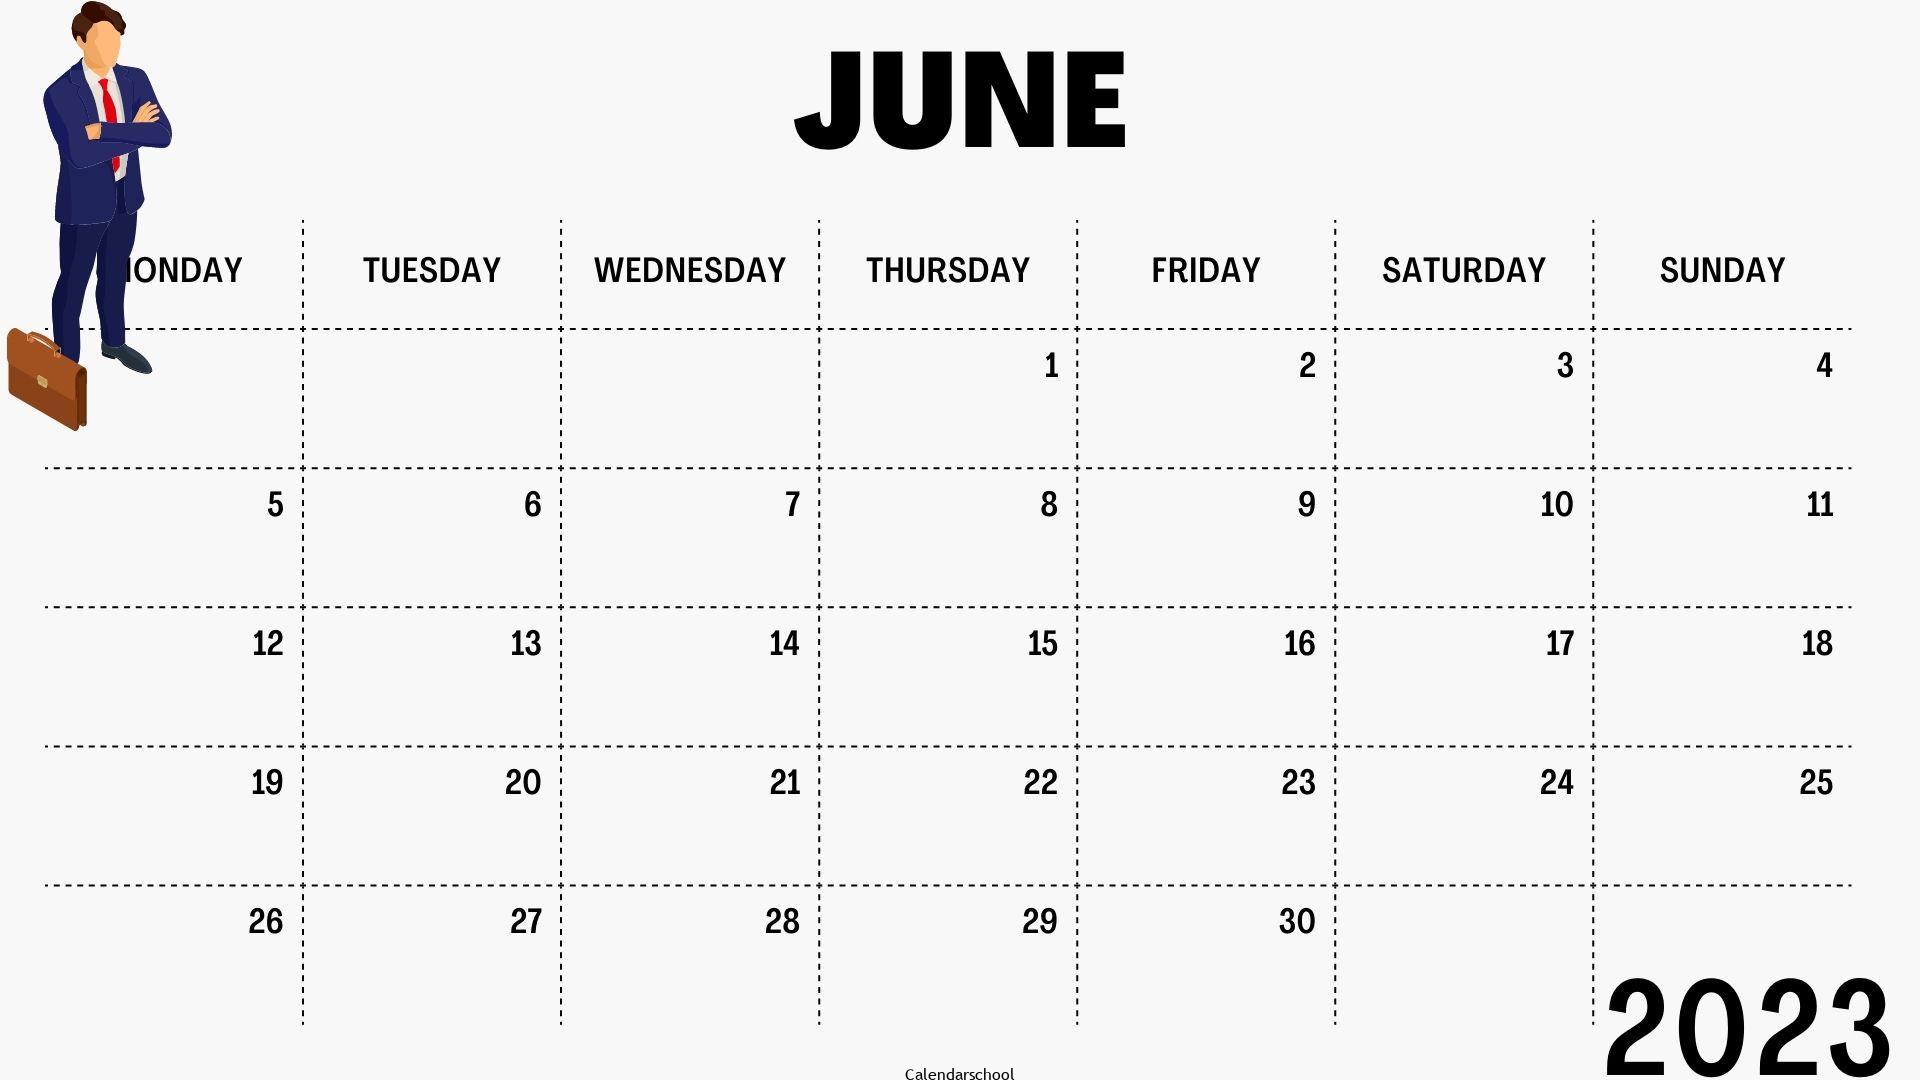 Tamil Daily Calendar 2023 June